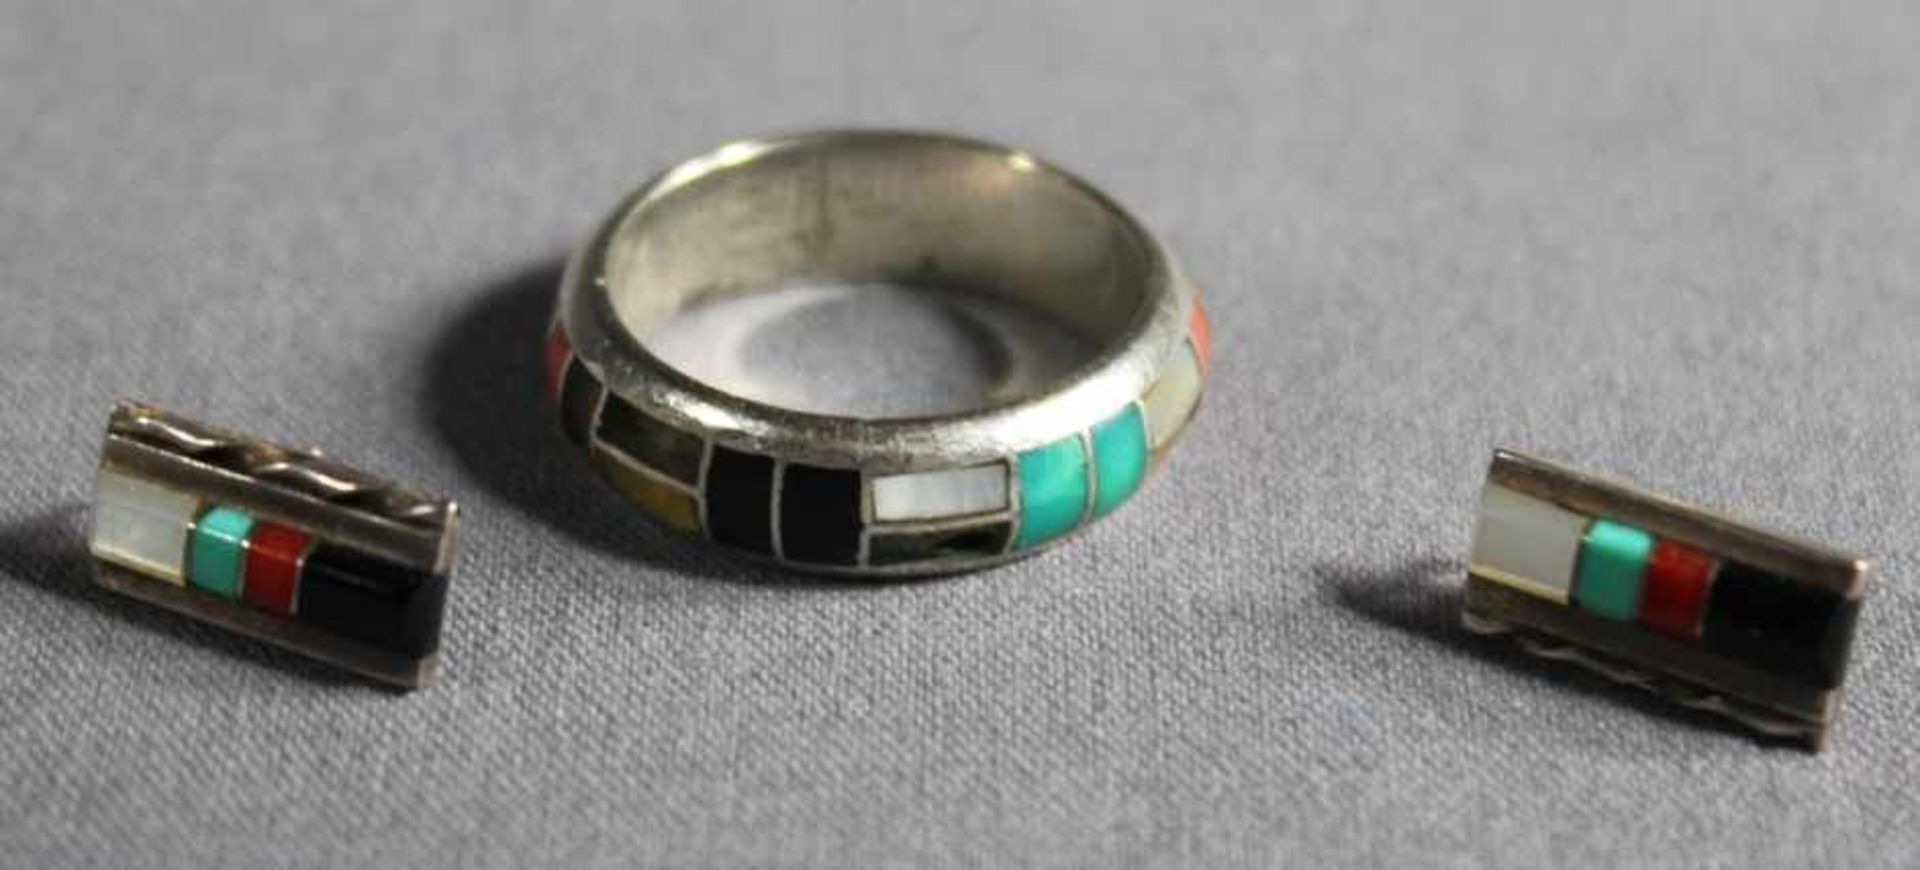 1 kleines Schmuckset Silber (925/000) bestehend aus 1 Ring (3 Steine fehlen), RG 20 und 1 Paar